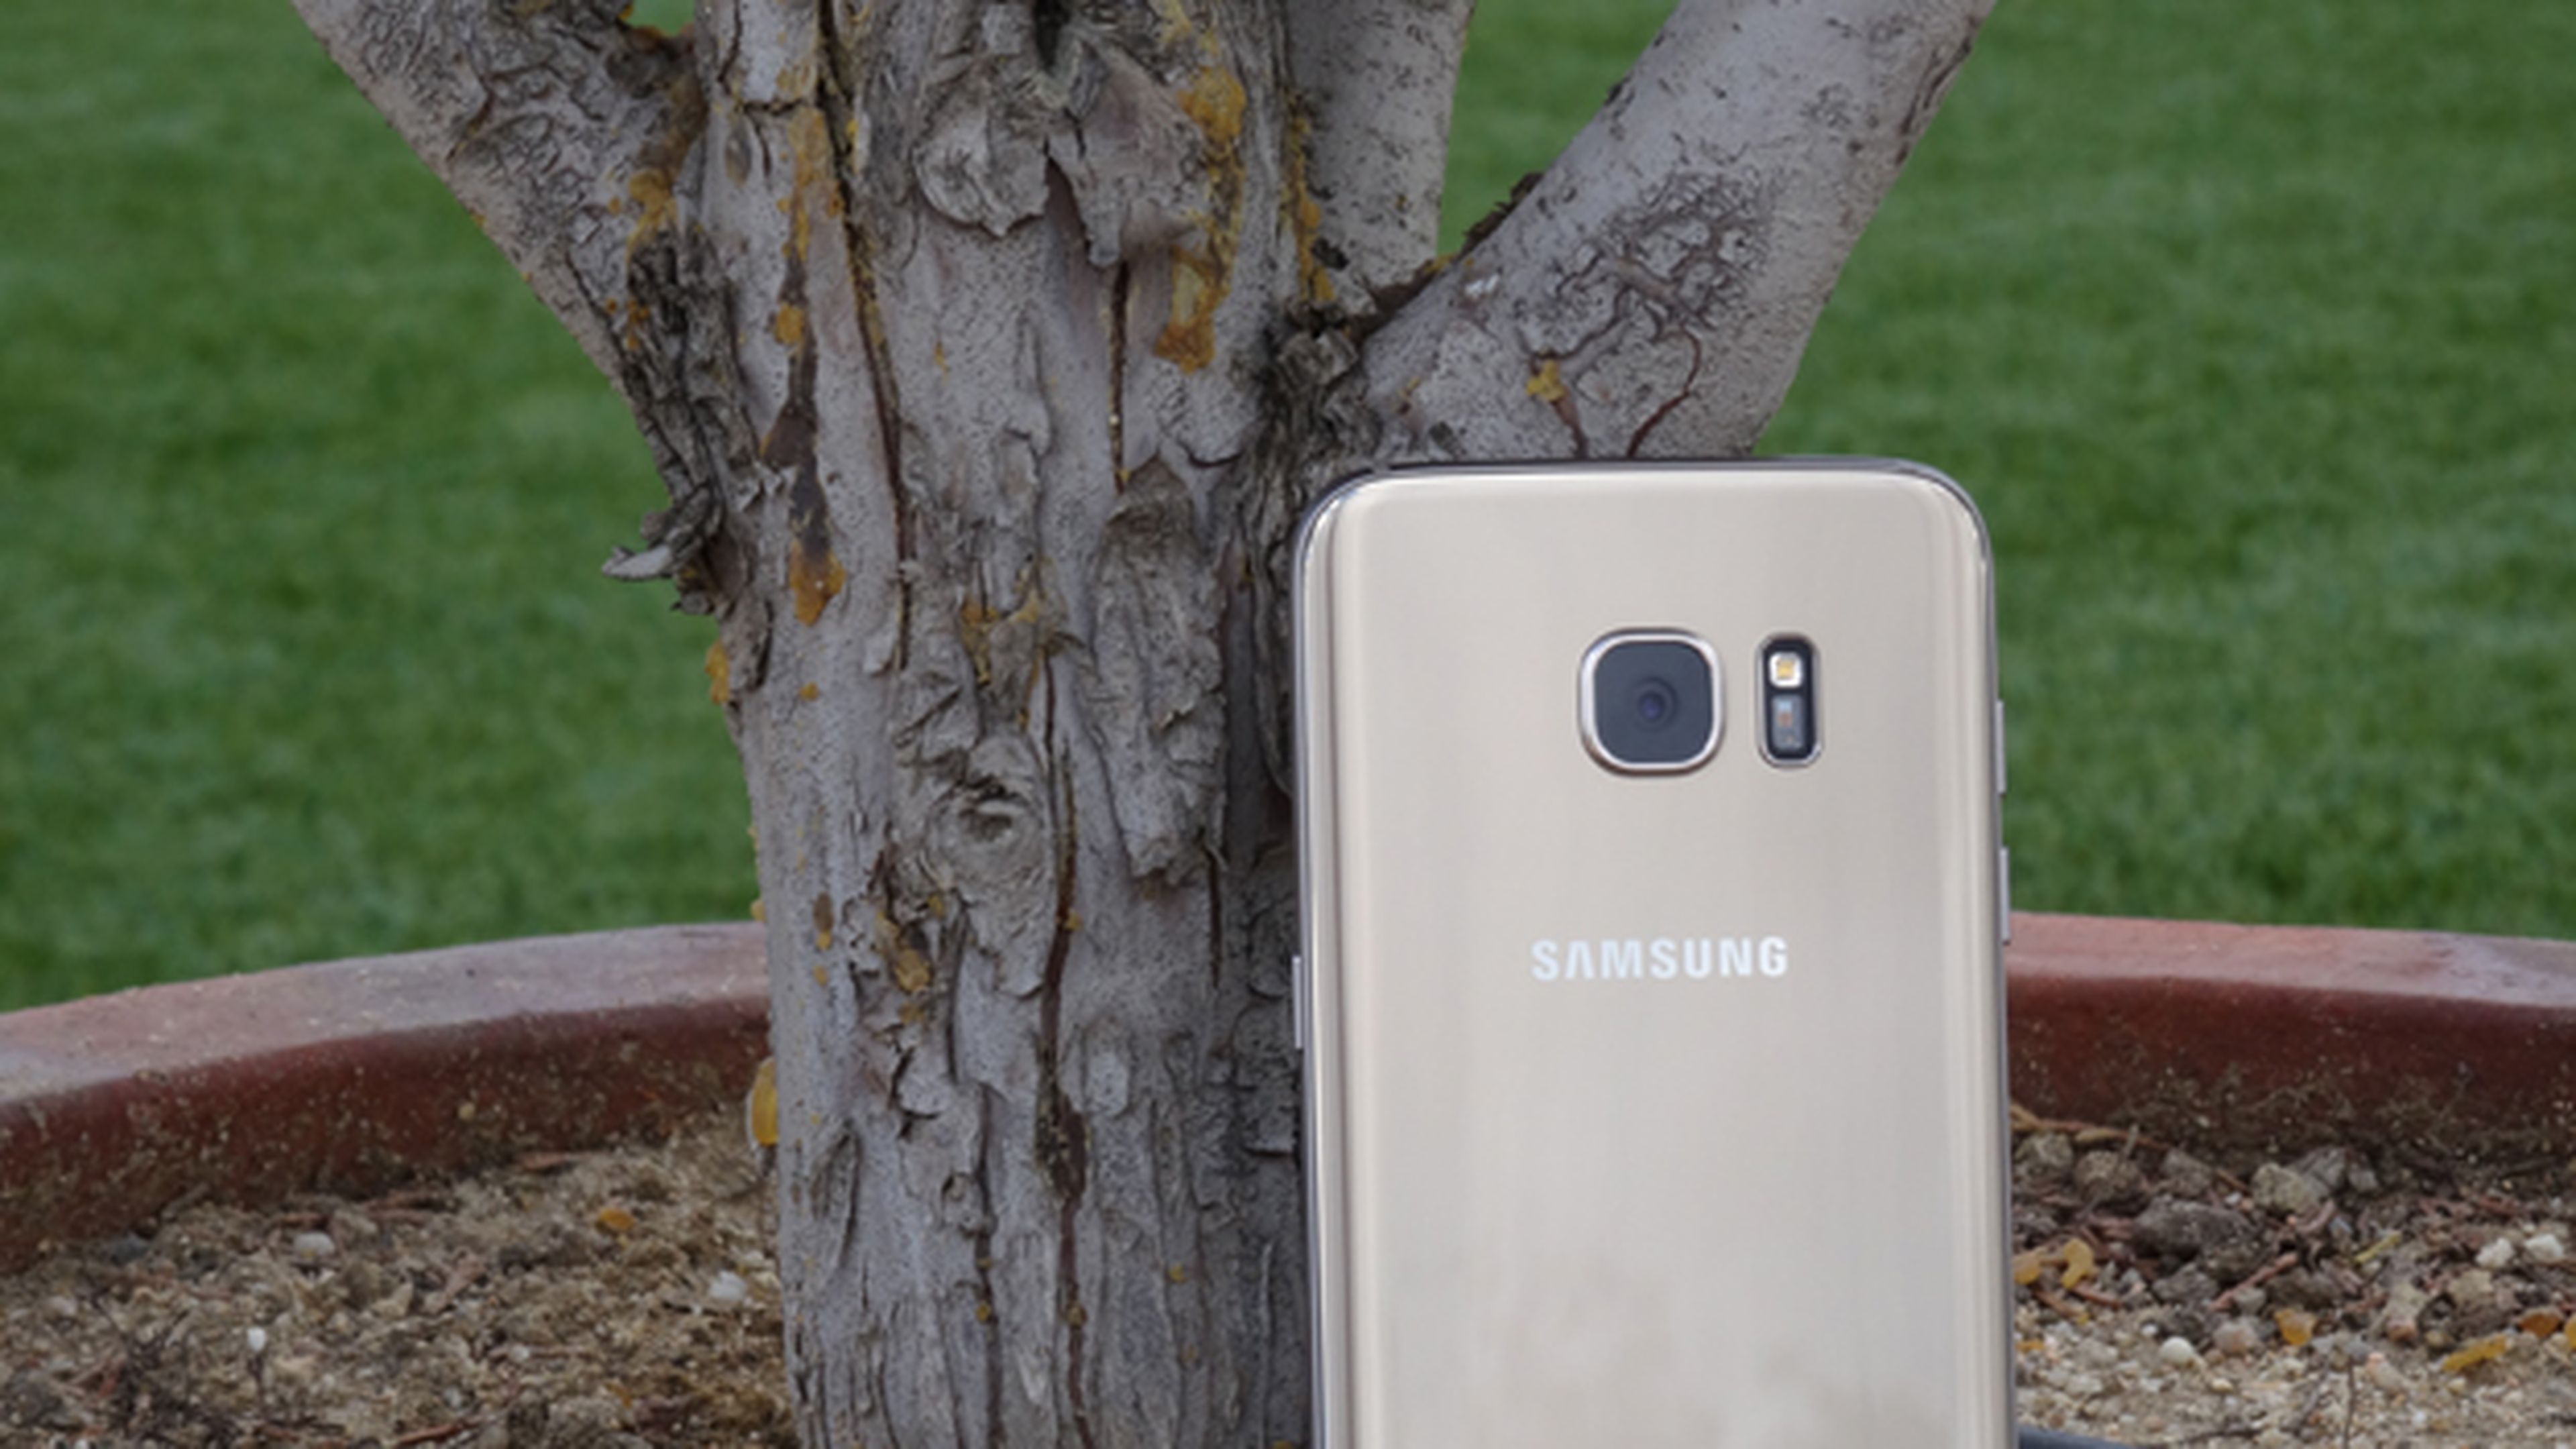 Y hasta aquí nuestra prueba del Samsung Galaxy S7 Edge, review que además acompañamos con un vídeo